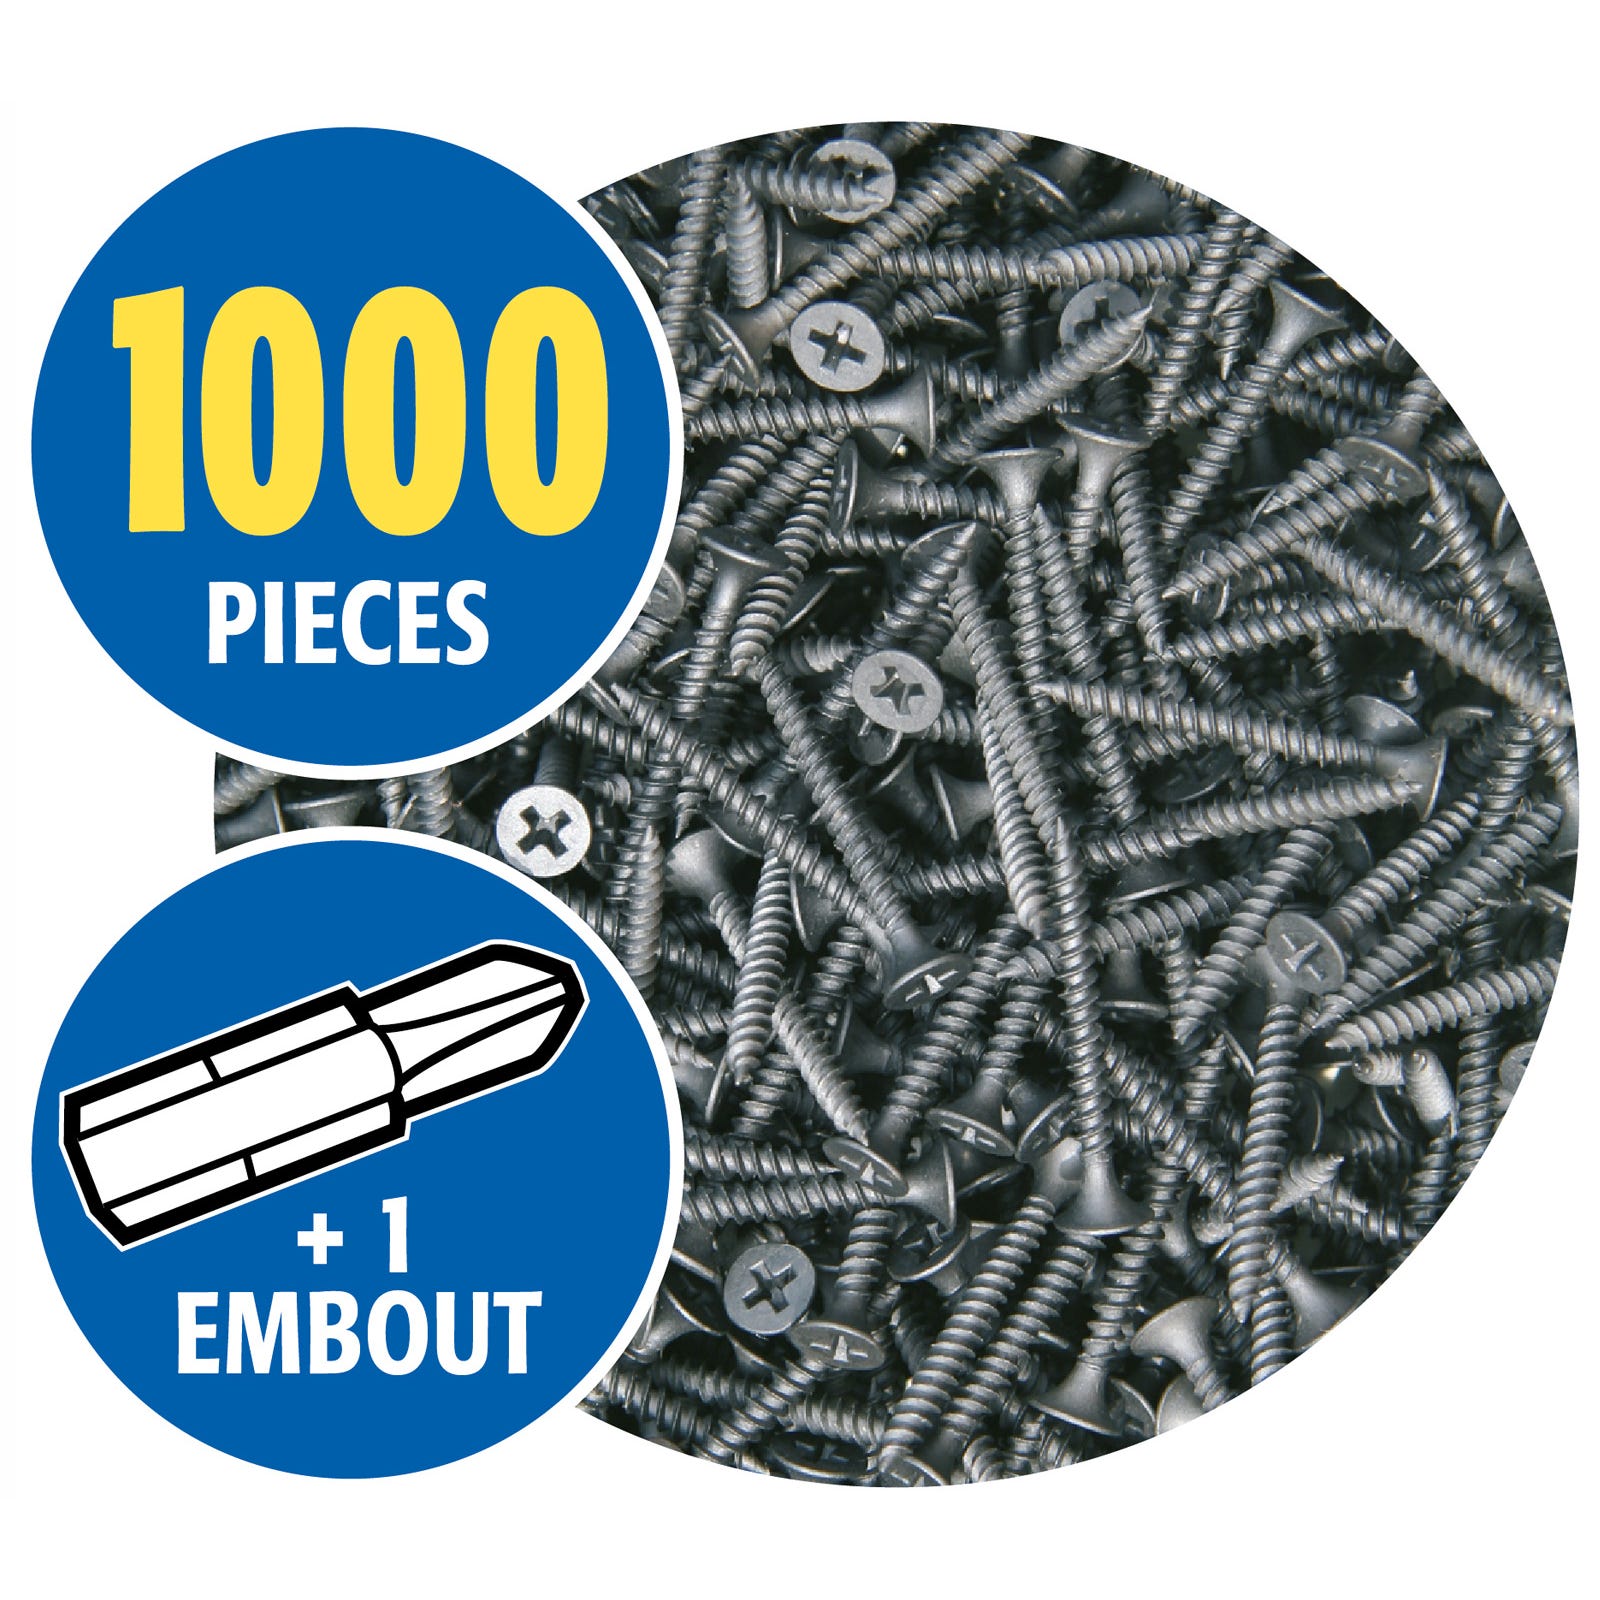 Lot de 2 x 1000 vis auto perceuse Semin pour la fixation des plaques de plâtre sur l'ossature - intérieur - 25 mm x 3.5 mm 5